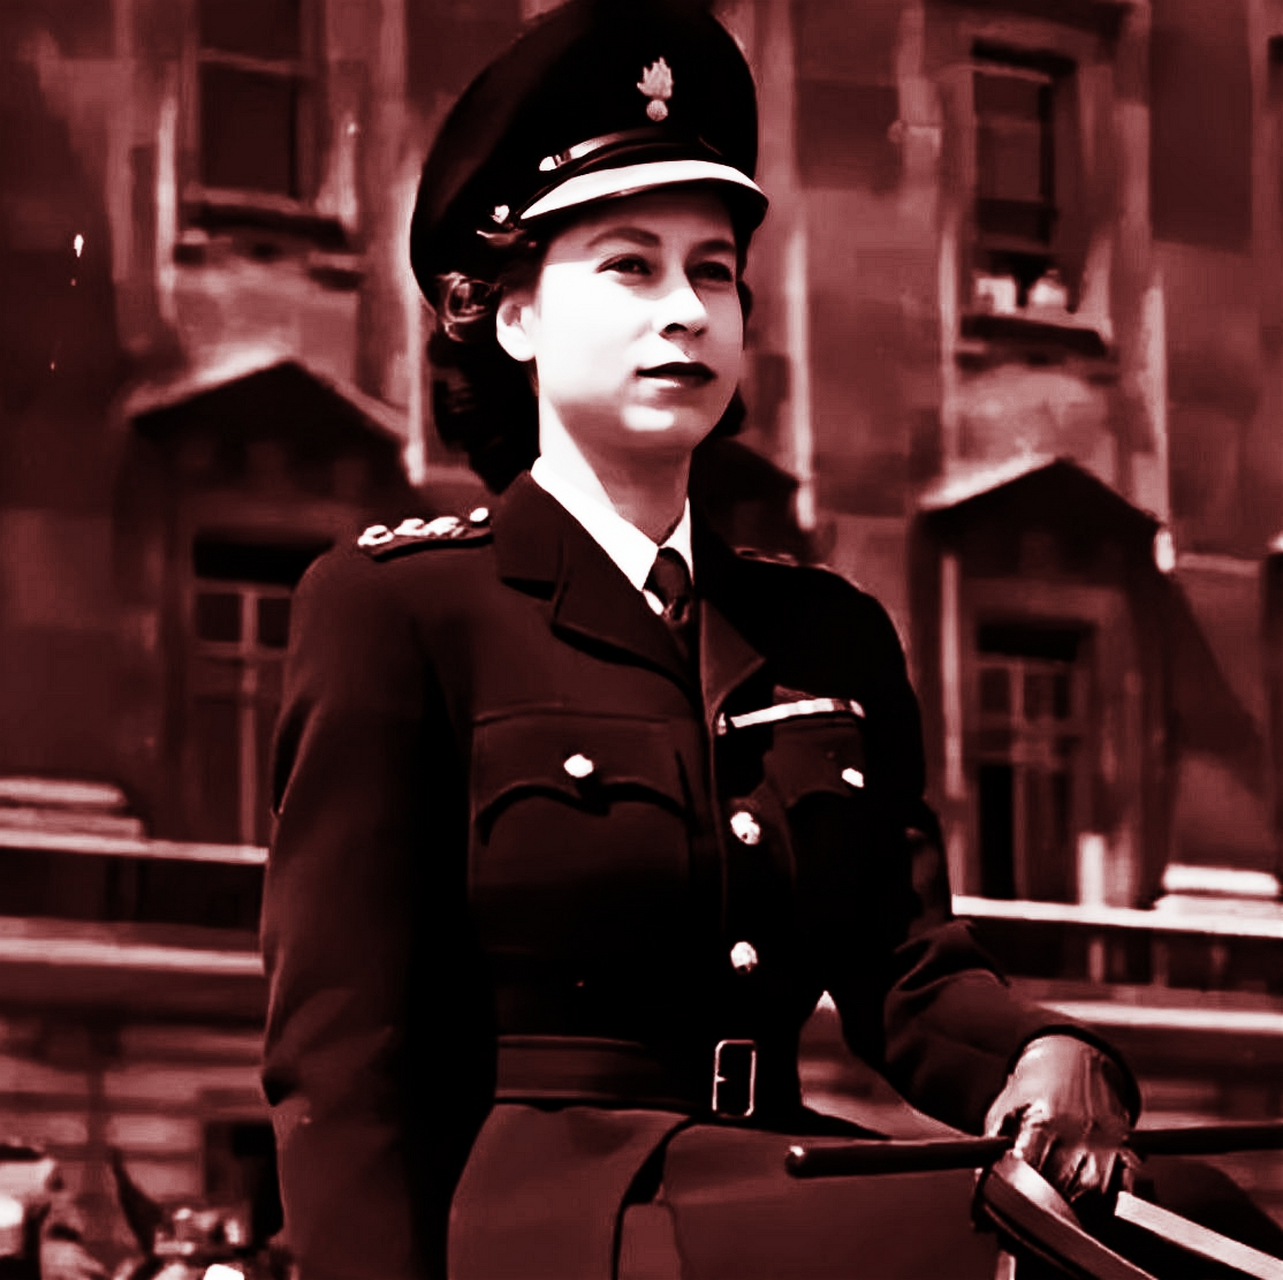 1960年,英国女王伊丽莎白身穿军装,头戴军帽,配上老照片,一骑绝尘